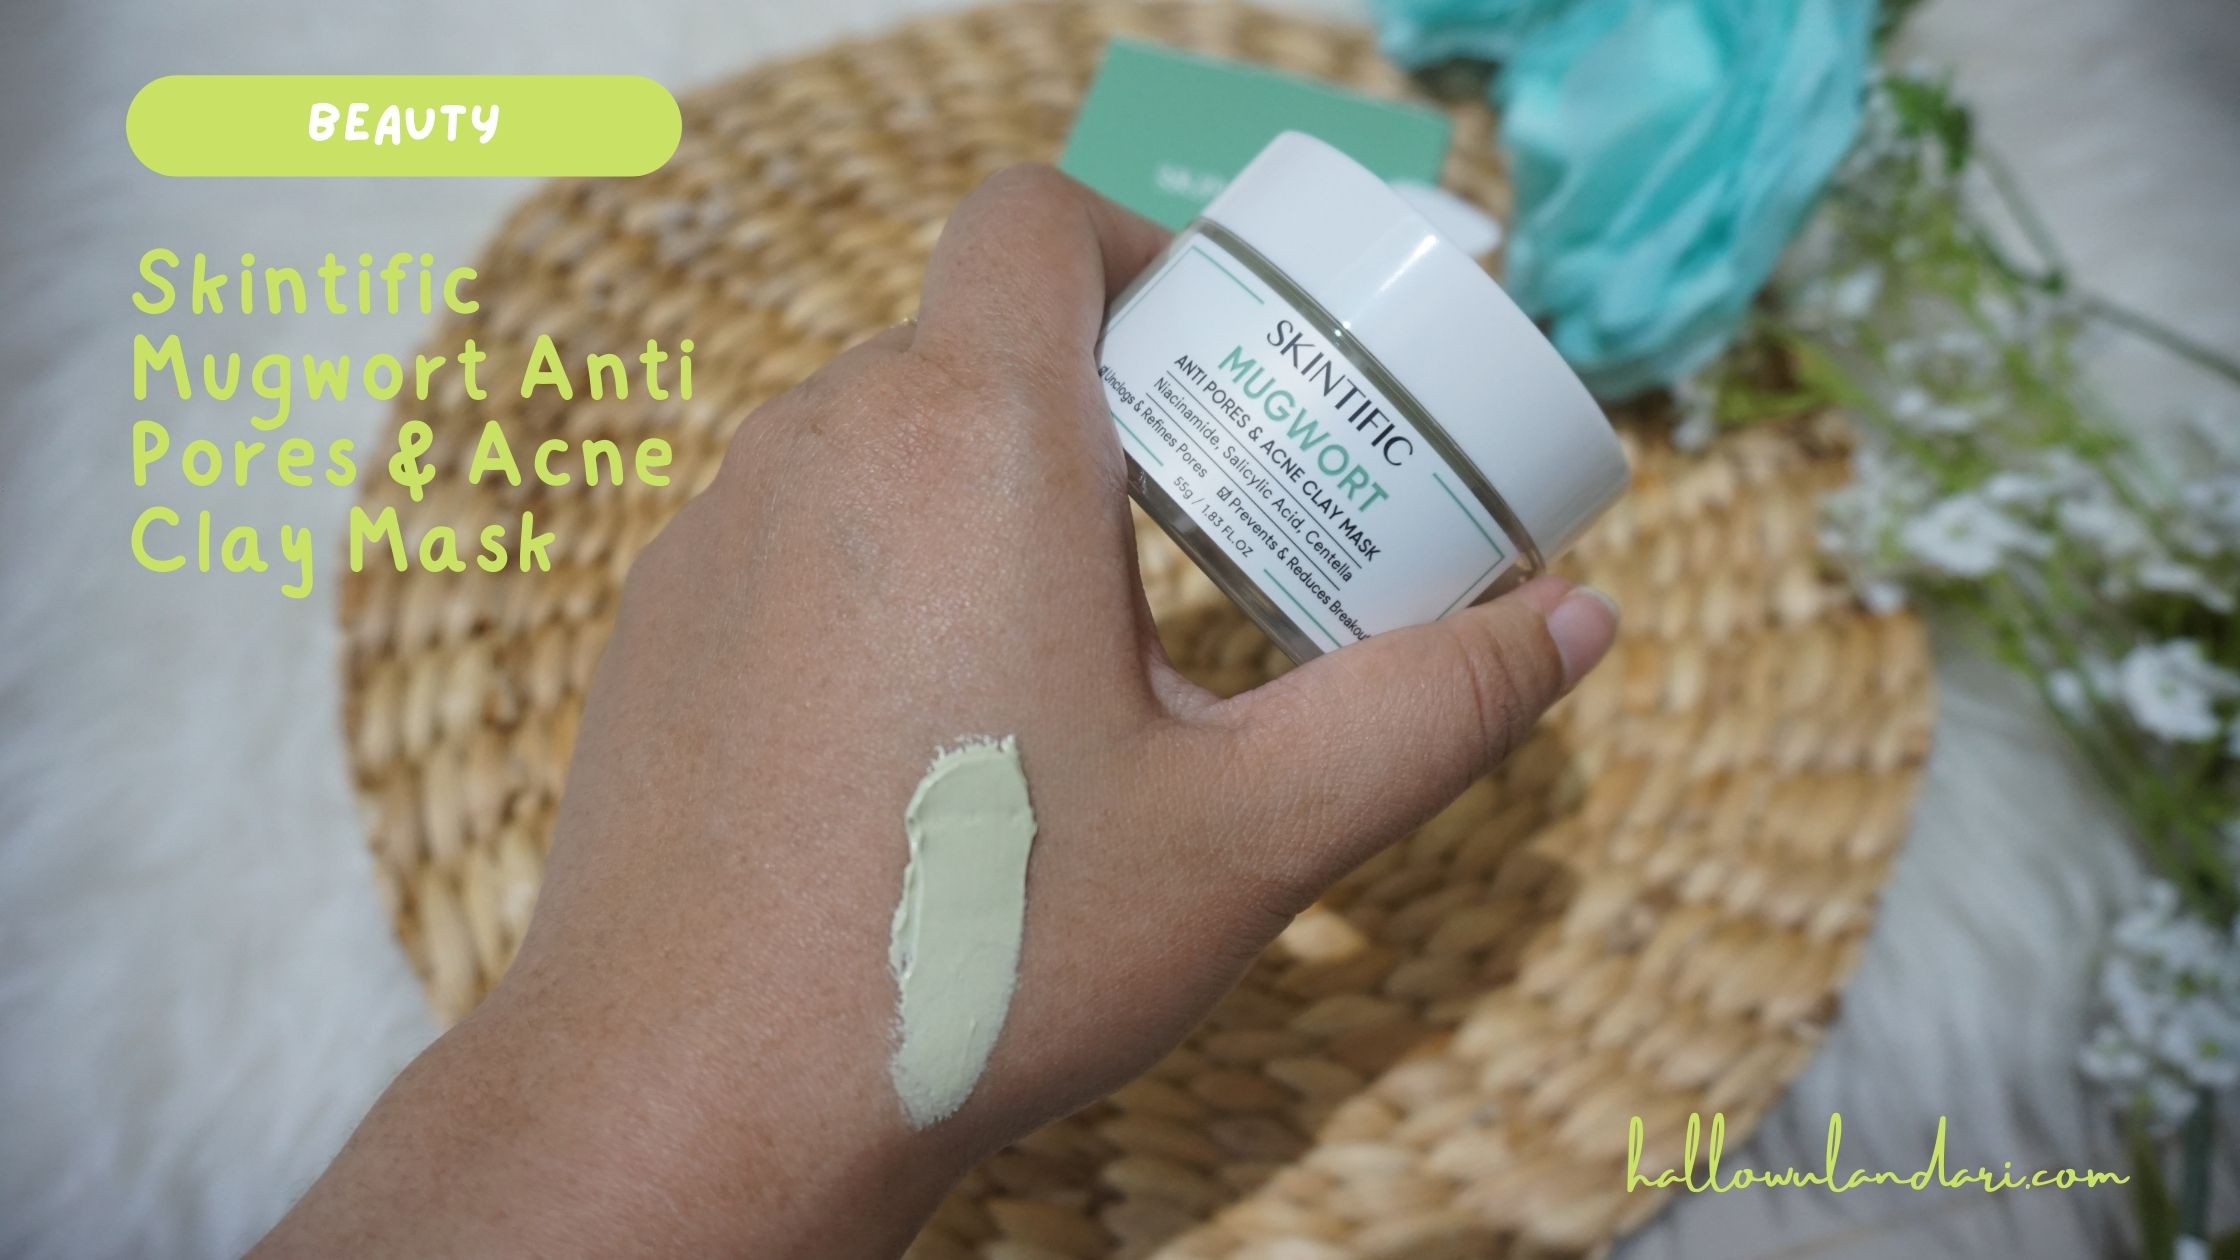 Tekstur dan Warna Skintific Mugwort Anti Pores & Acne Clay Mask